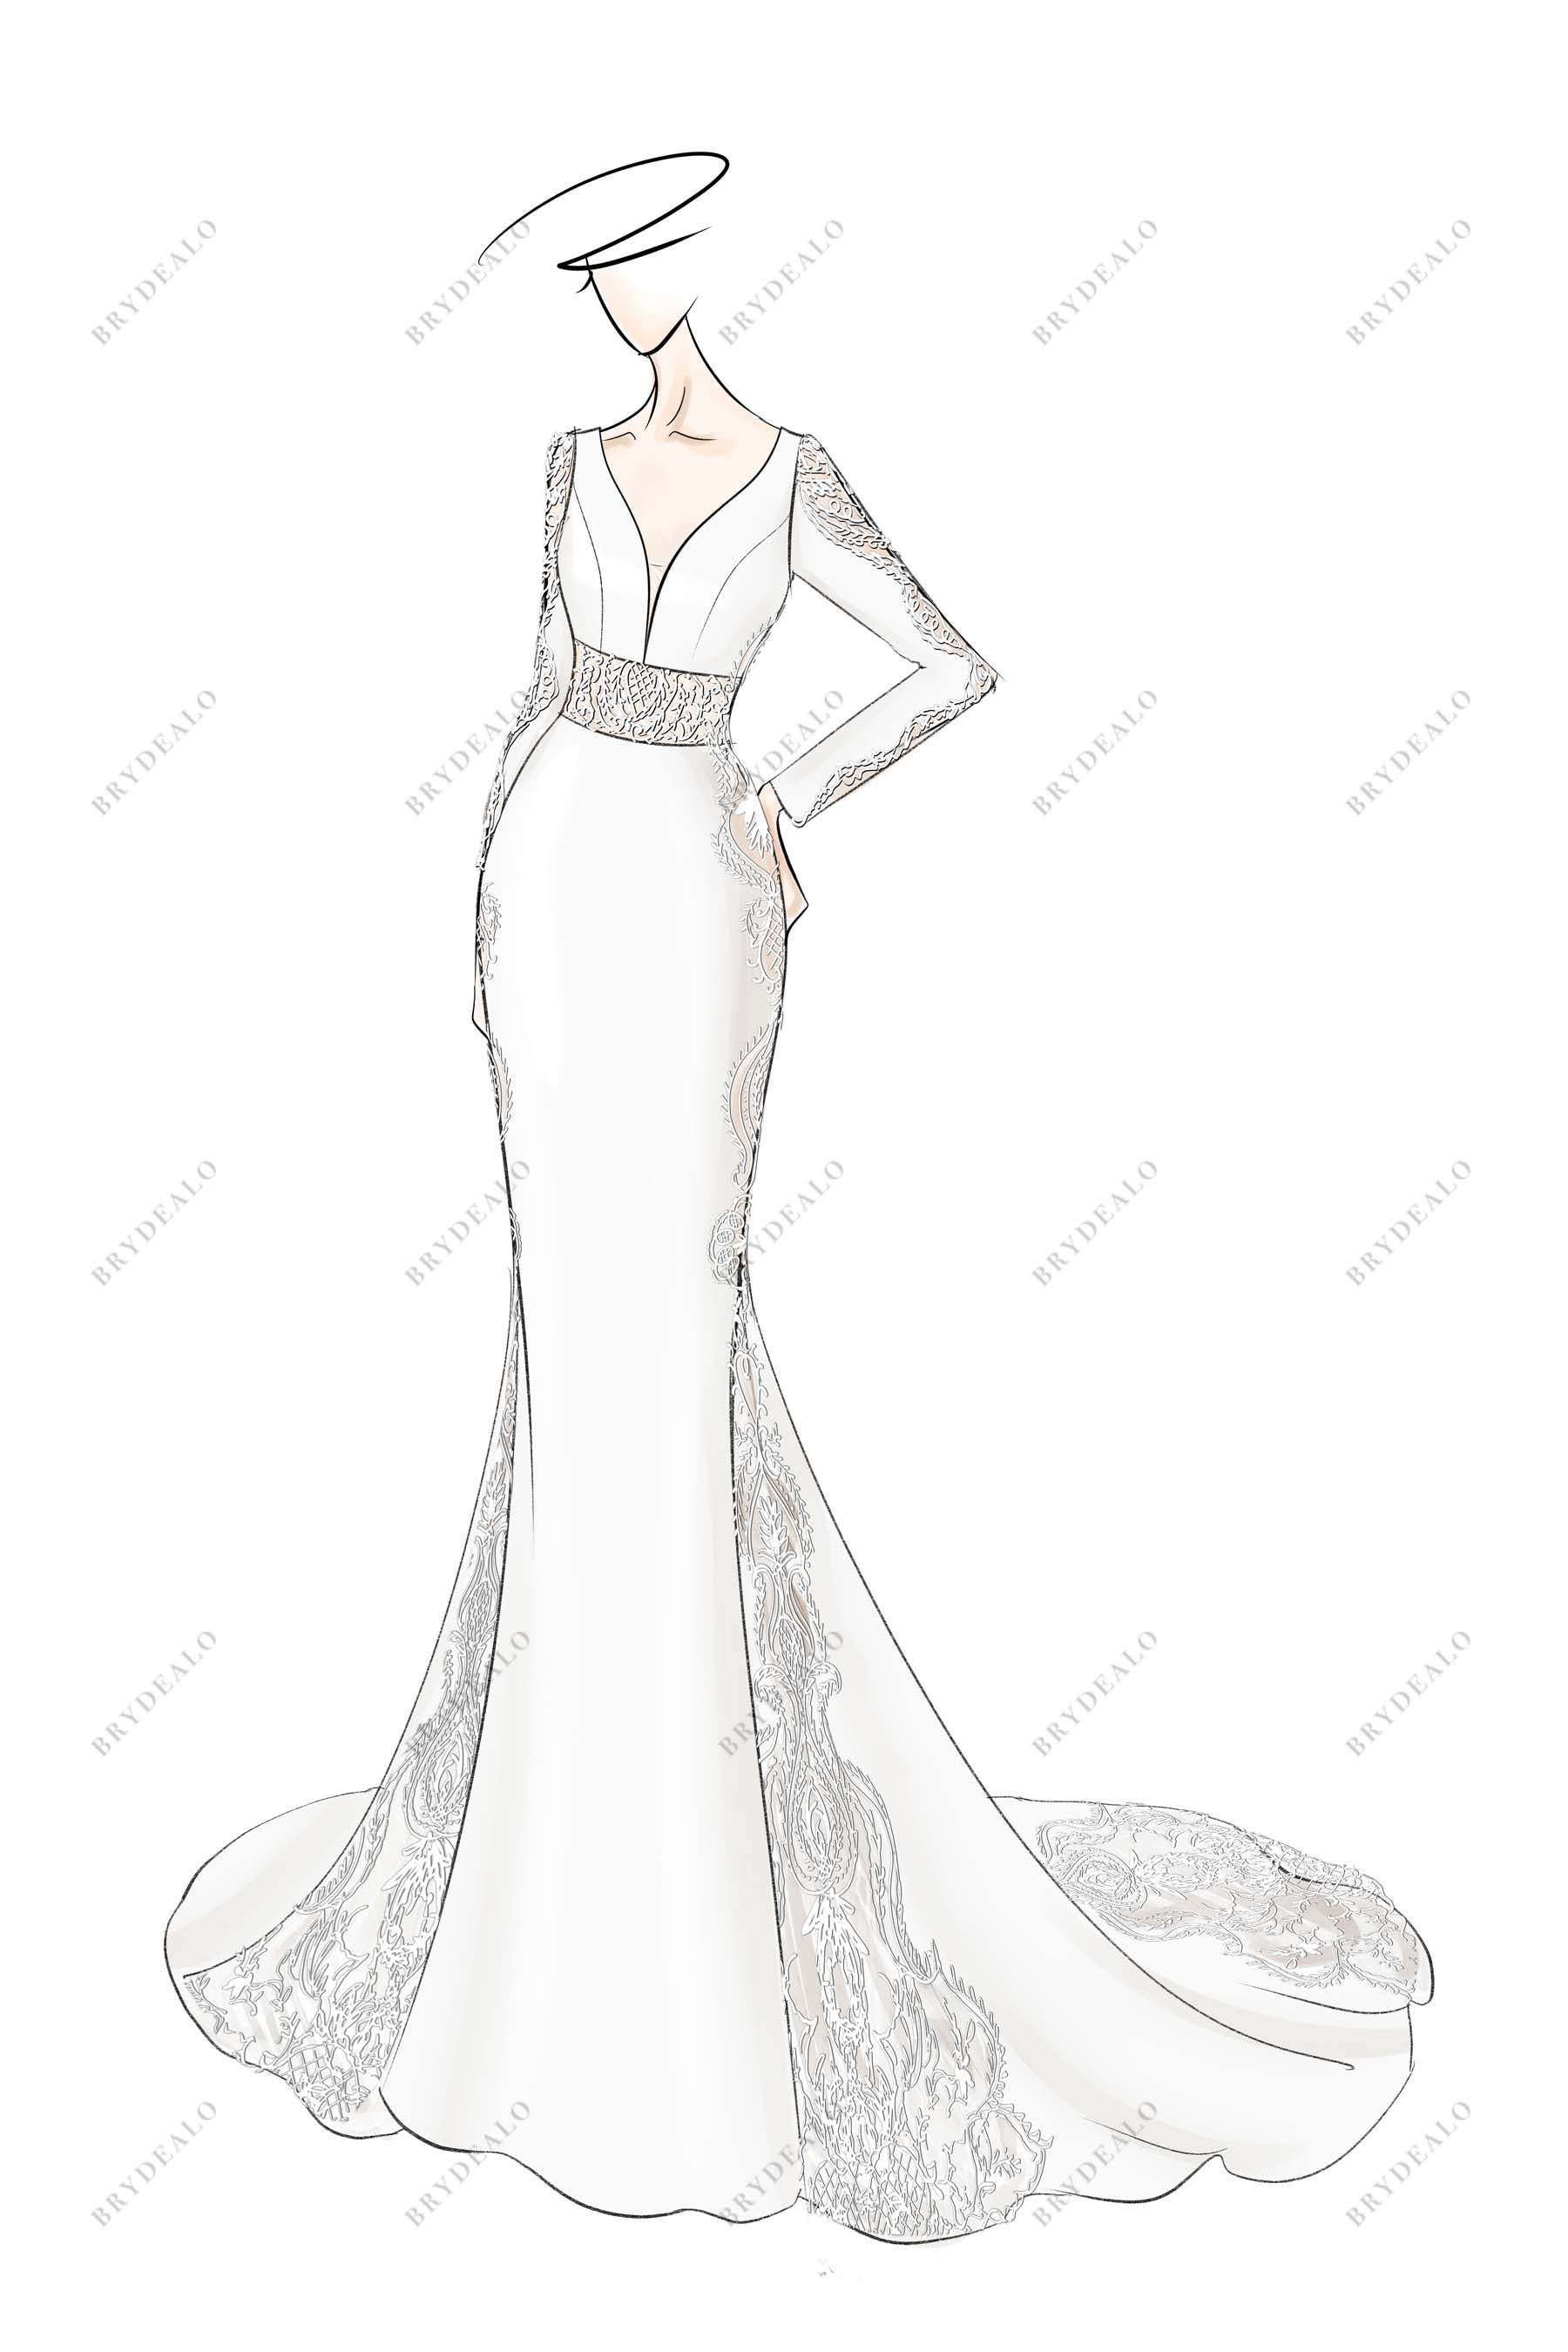 V-neck Appliqued Sleeve Designer Dress Sketch